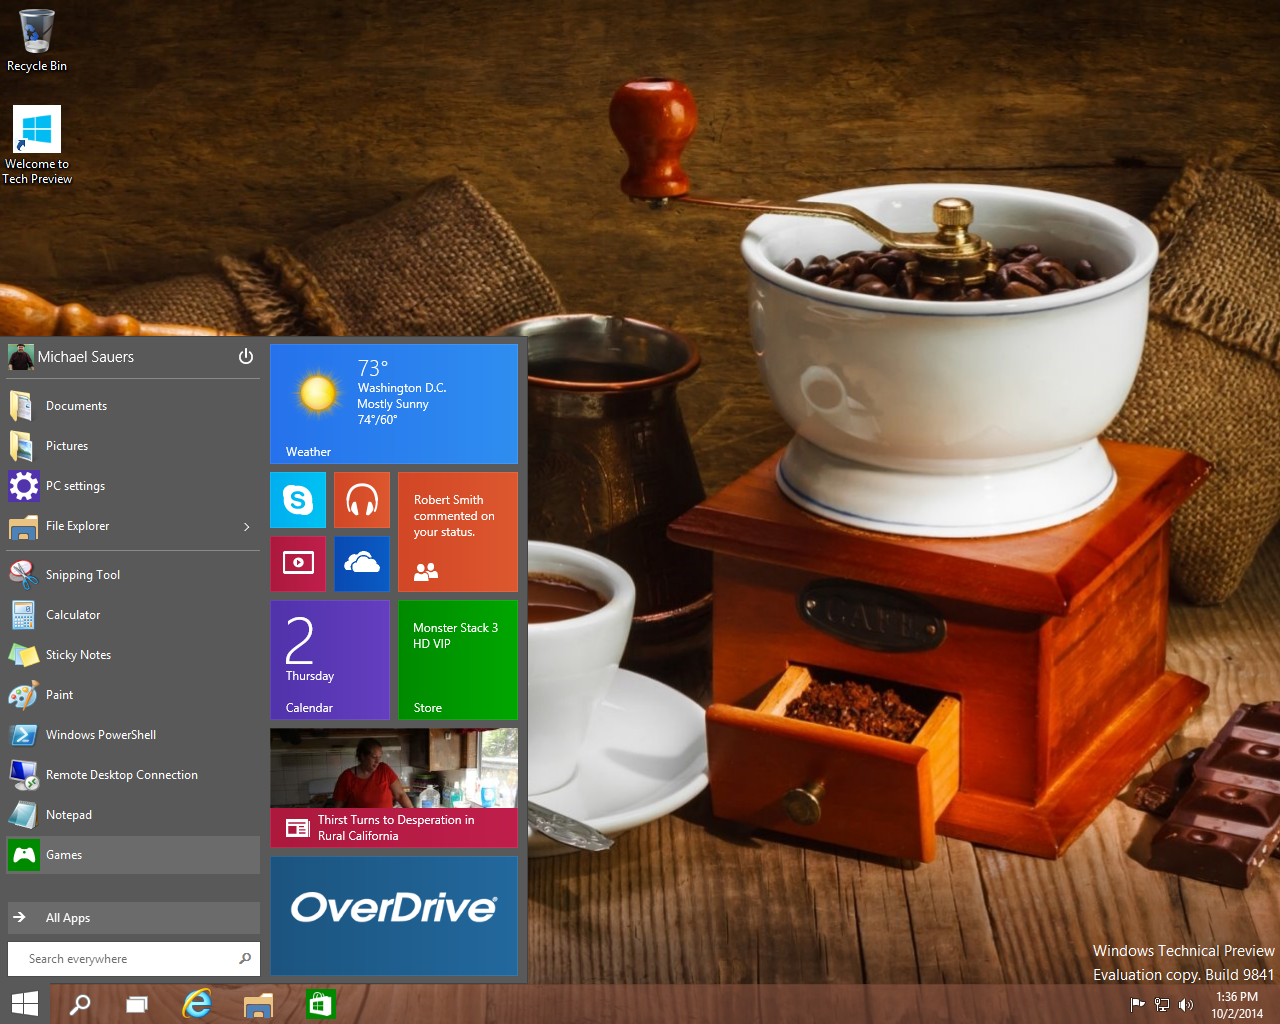 Windows 10 Technical Preview screenshots